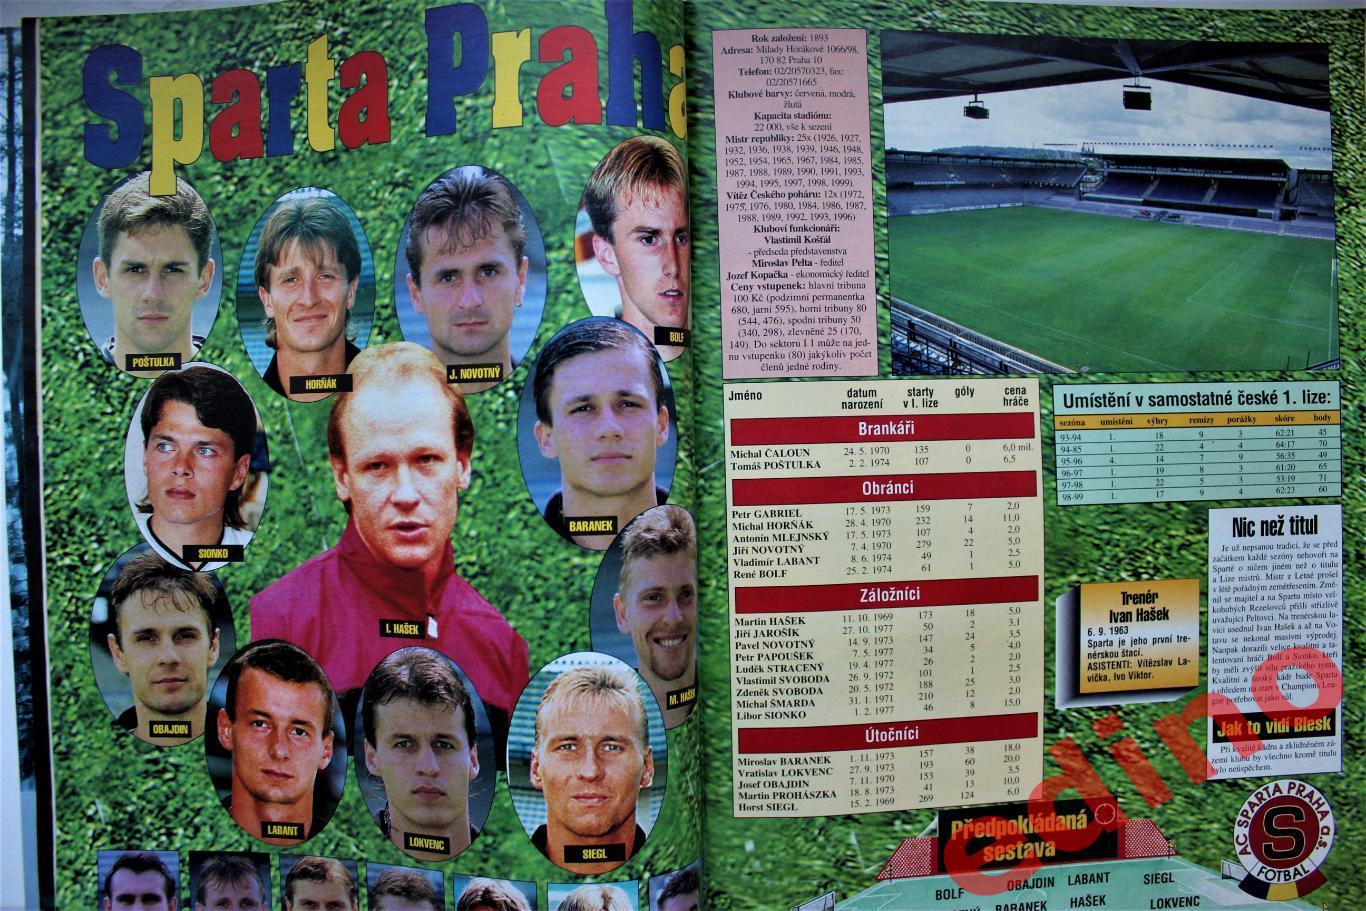 журнал Blesk extra Чешская лига 1999/2000гг 1